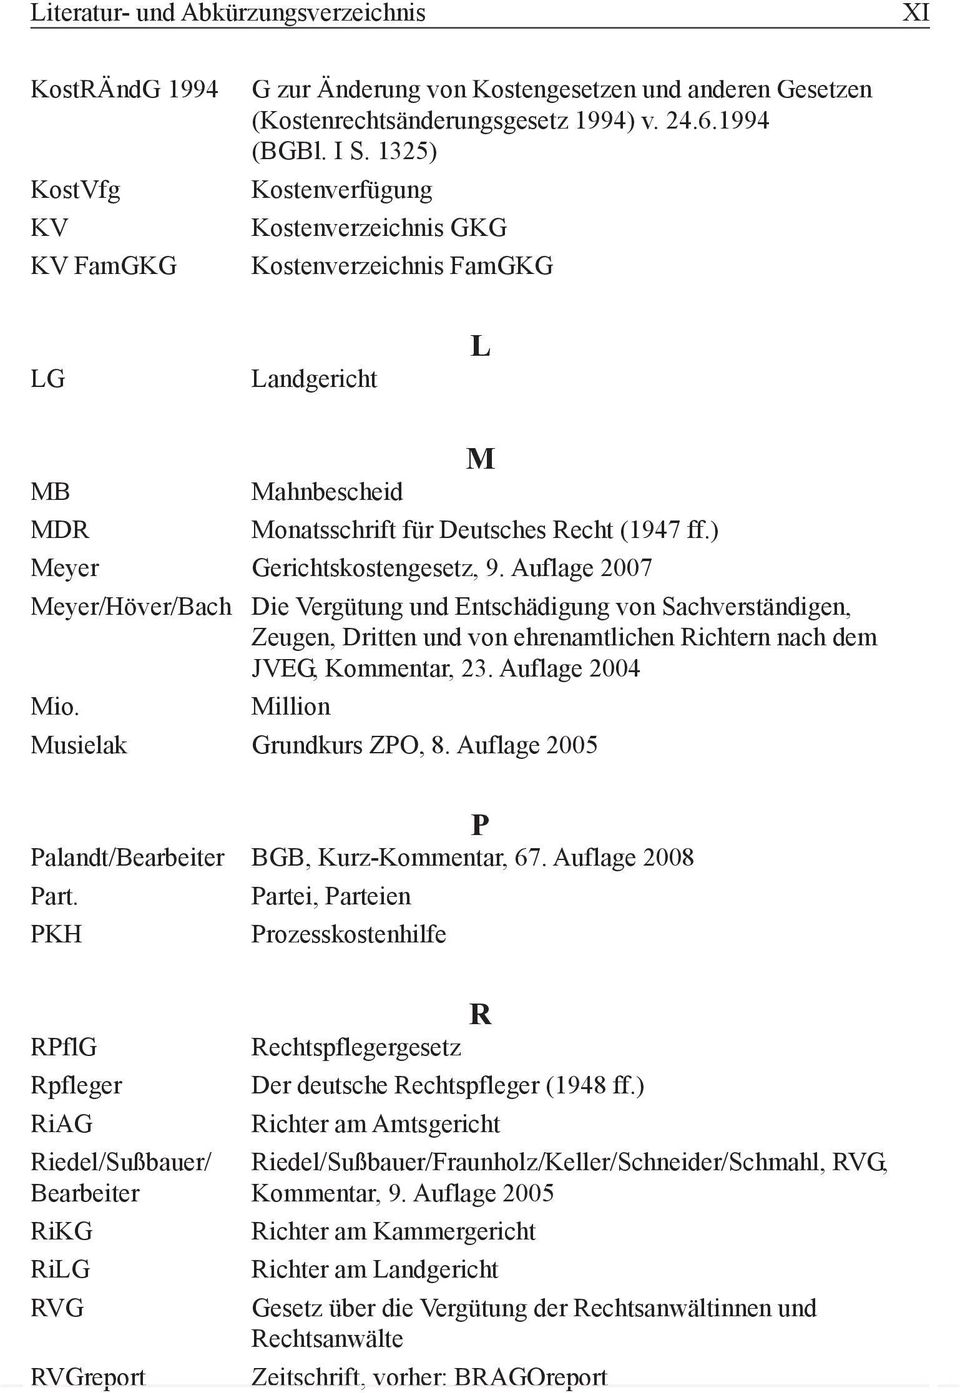 Auflage 2007 Meyer/Höver/Bach Die Vergütung und Entschädigung von Sachverständigen, Zeugen, Dritten und von ehrenamtlichen Richtern nach dem JVEG, Kommentar, 23. Auflage 2004 Mio.